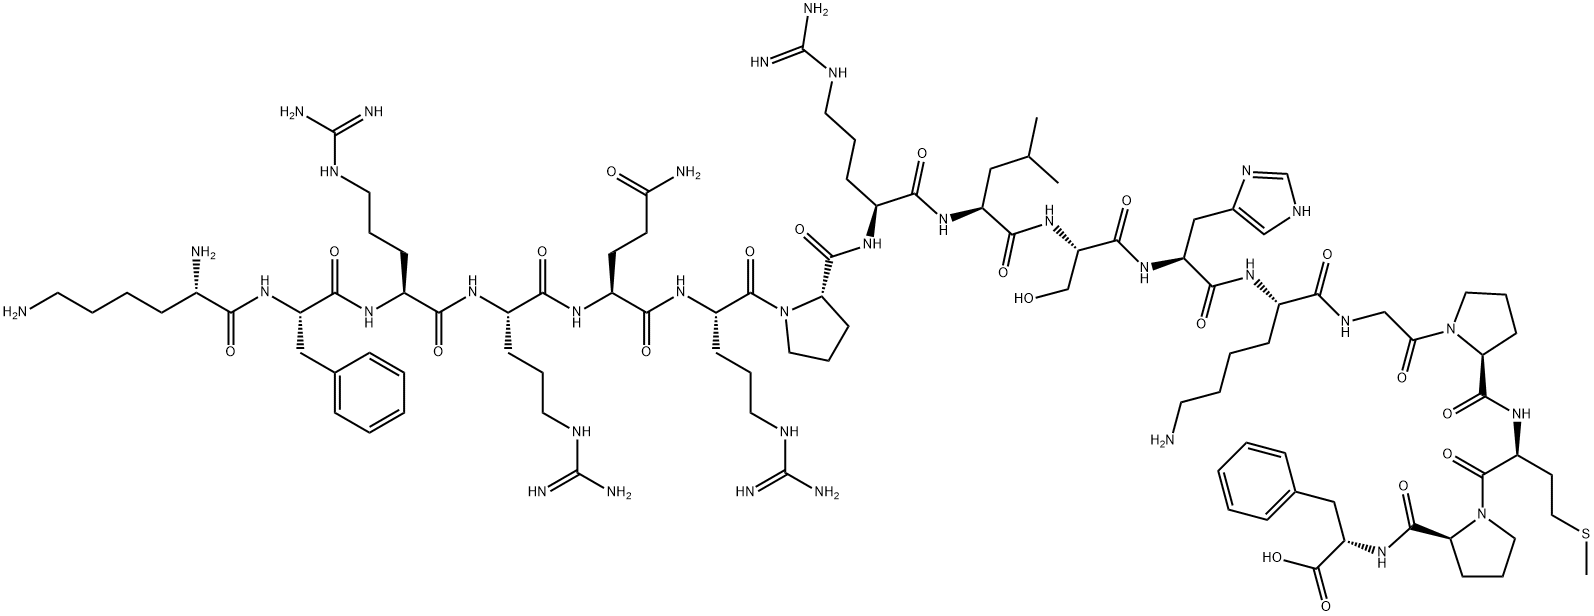 217082-57-0 跨膜G蛋白偶联受体多肽